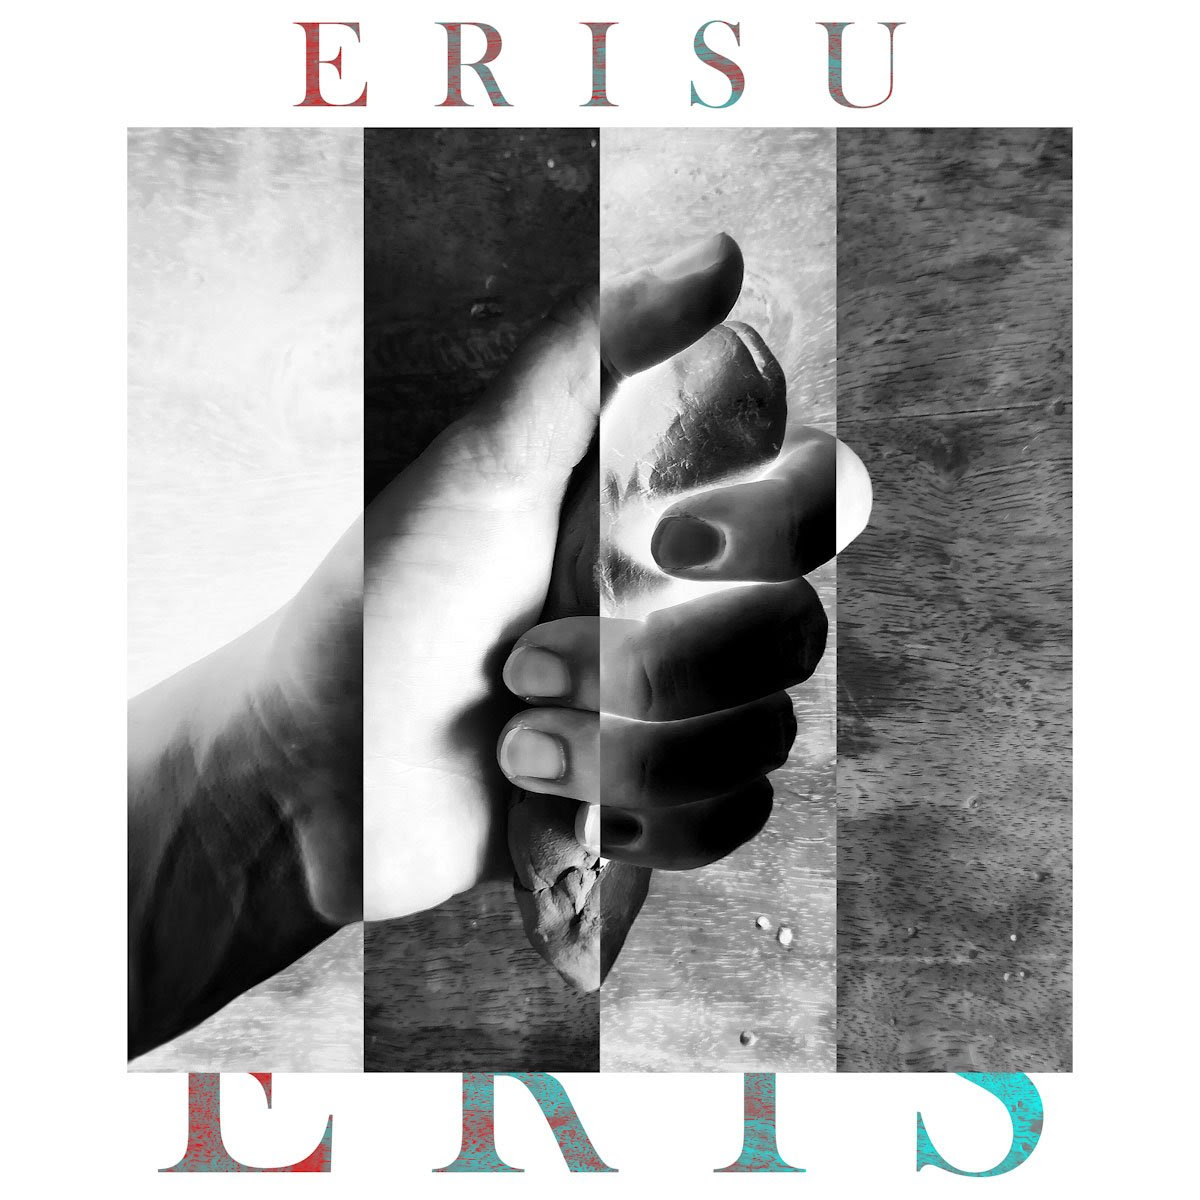 ERISU: il 14 giugno esce in radio e in digitale “ERIS” il nuovo singolo estratto dall’EP “HEAVY GODDESSES” di prossima uscita